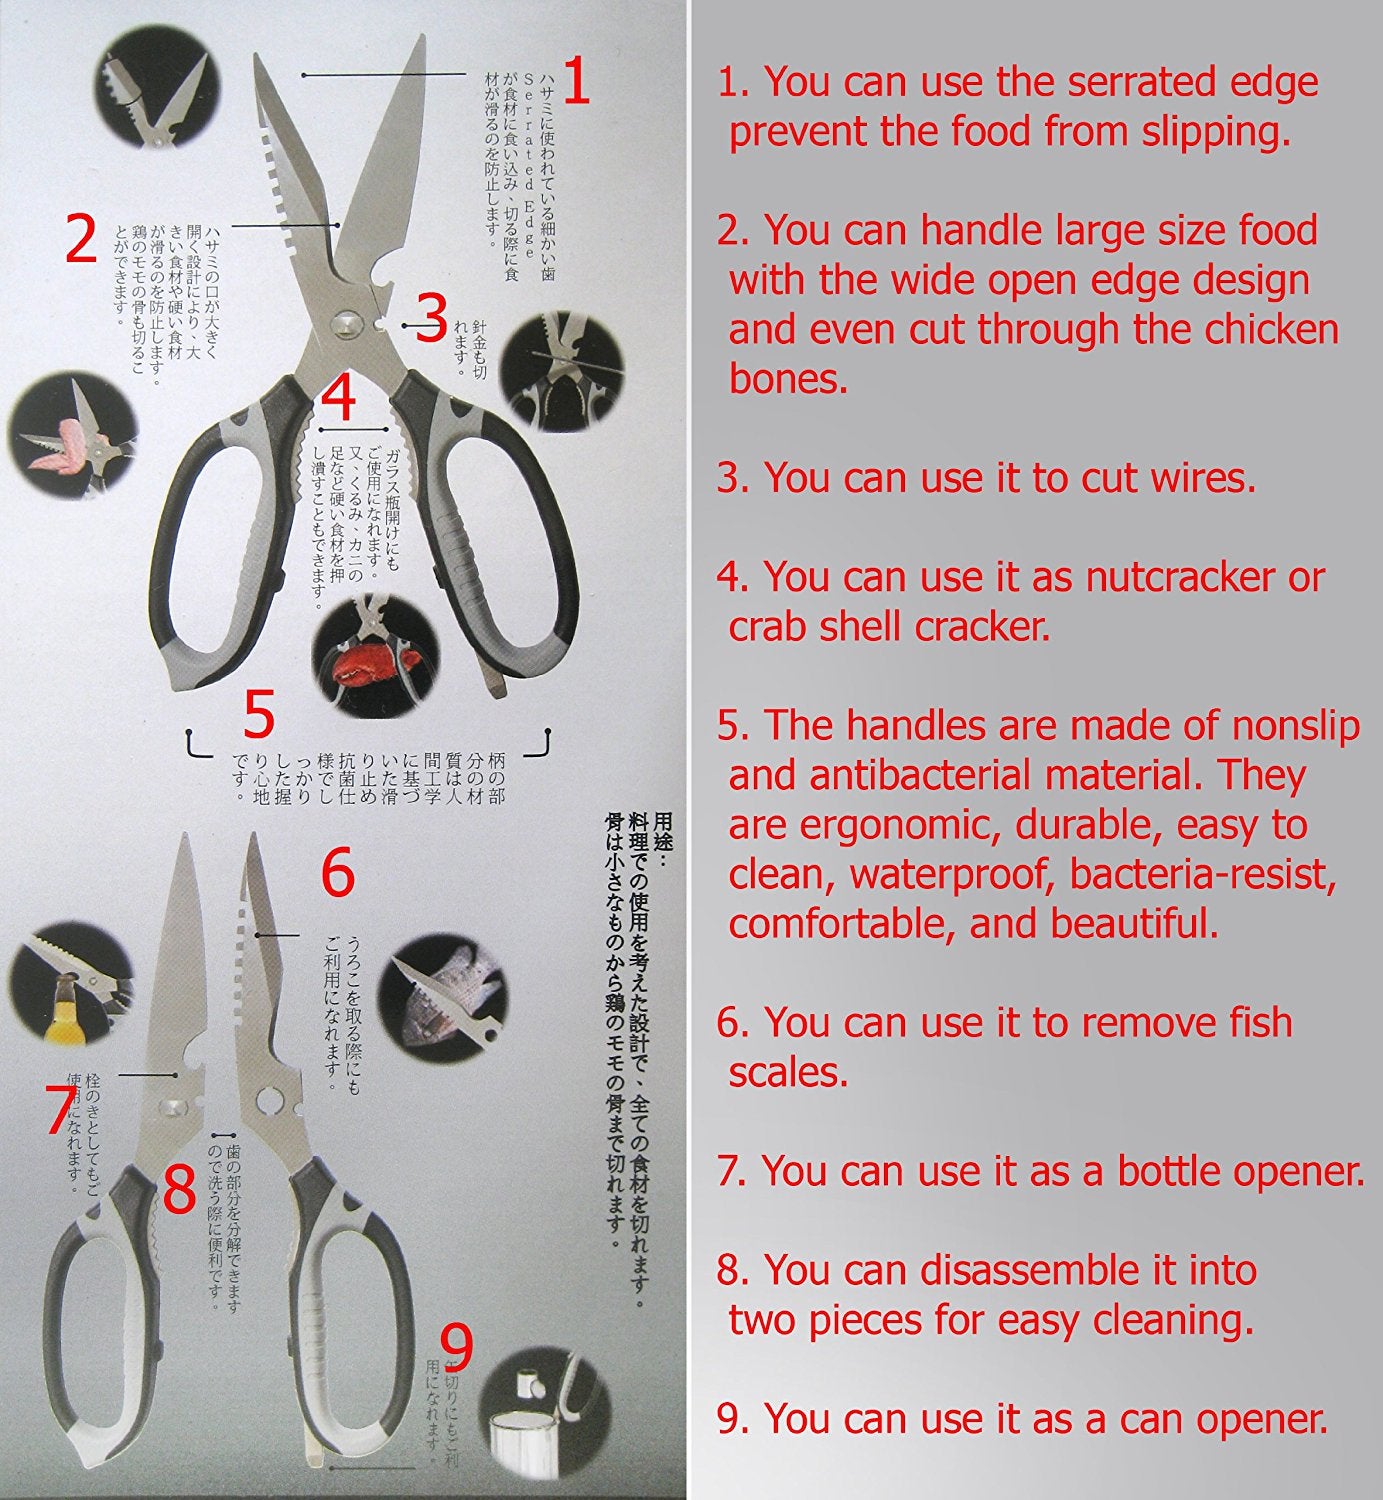 Kitchen Scissors, Multi-function Heavy Duty Kitchen Shears, 9 Inch